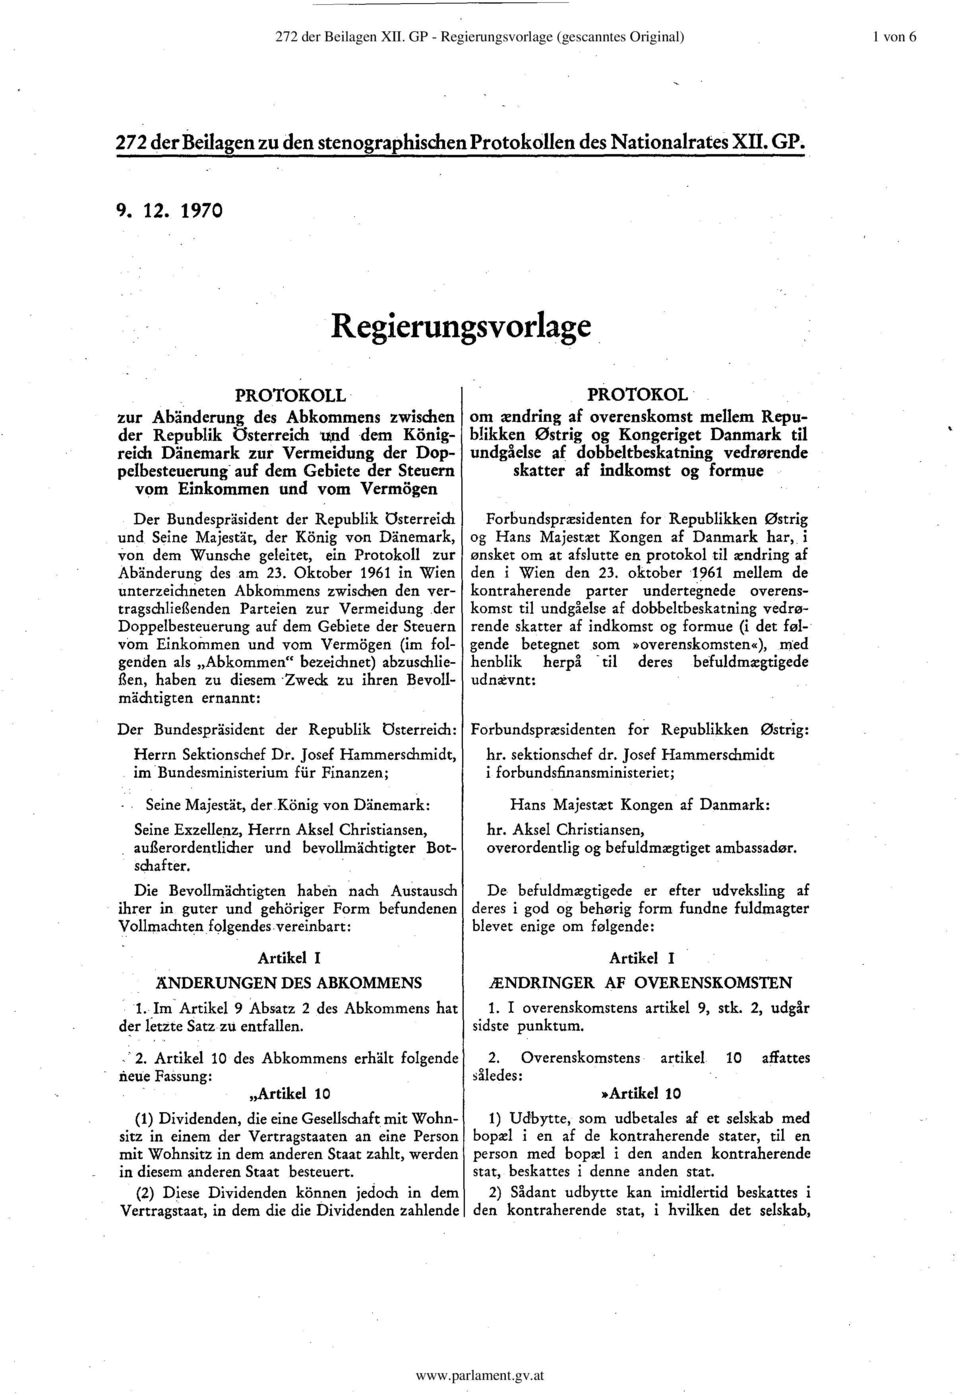 Der Bundespräsident der Republik österreich und Seine Majestät, der König von Dänemark, von dem Wunsche geleitet, ein Protokoll zur Abänderung des am 23.